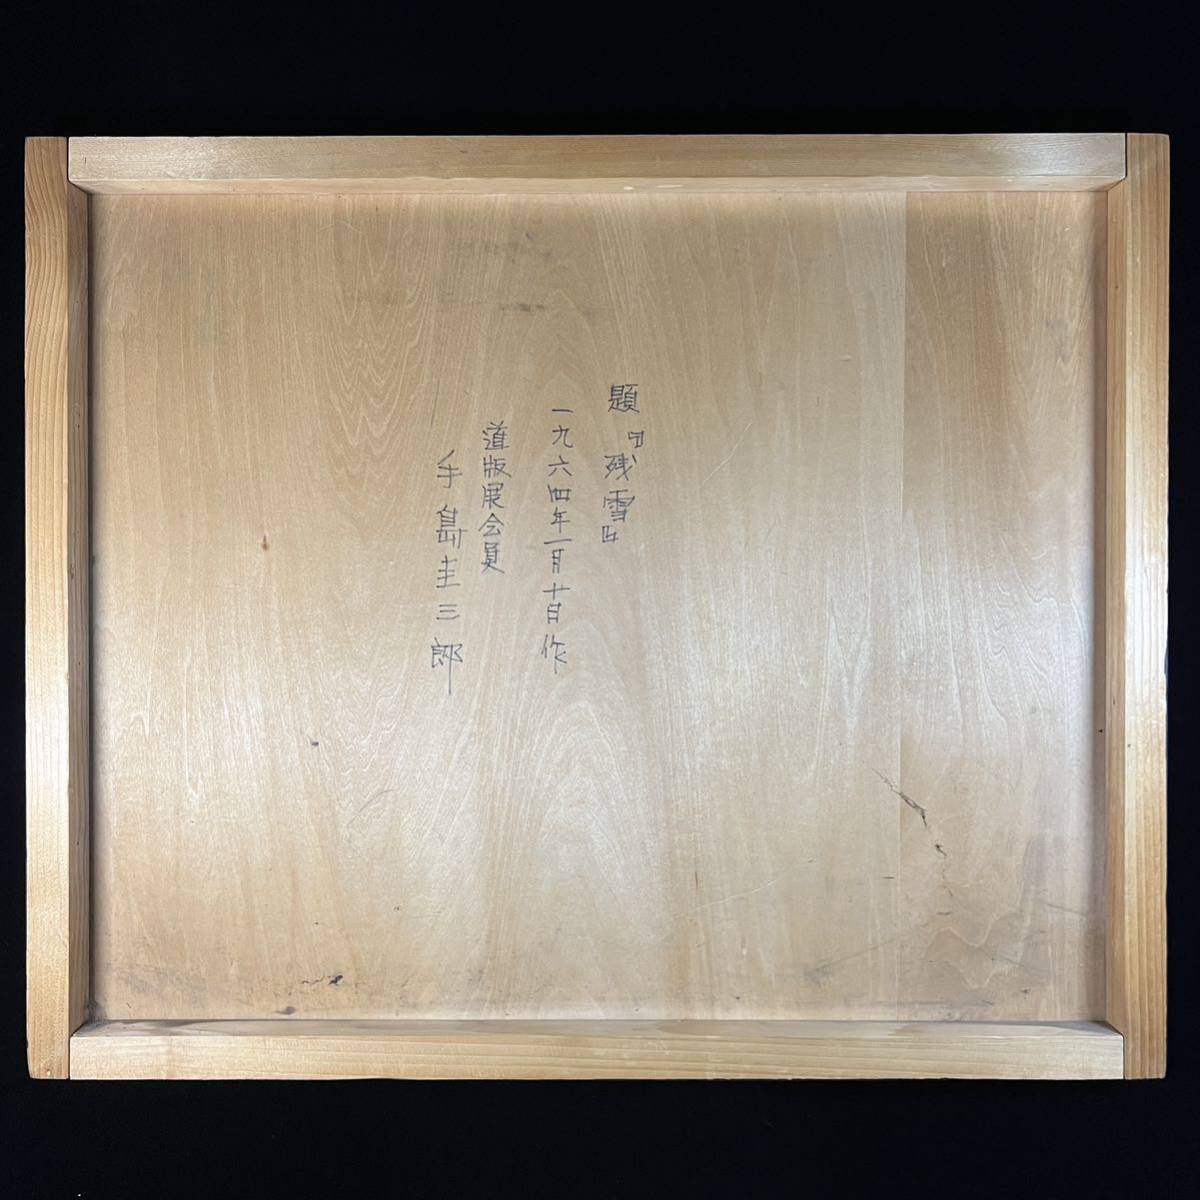 真作 手島圭三郎 『残雪』 木版画 1964年1月10日作 道版展会員 直筆サイン入り 直筆裏書きあり 絵本作家 版画_画像9